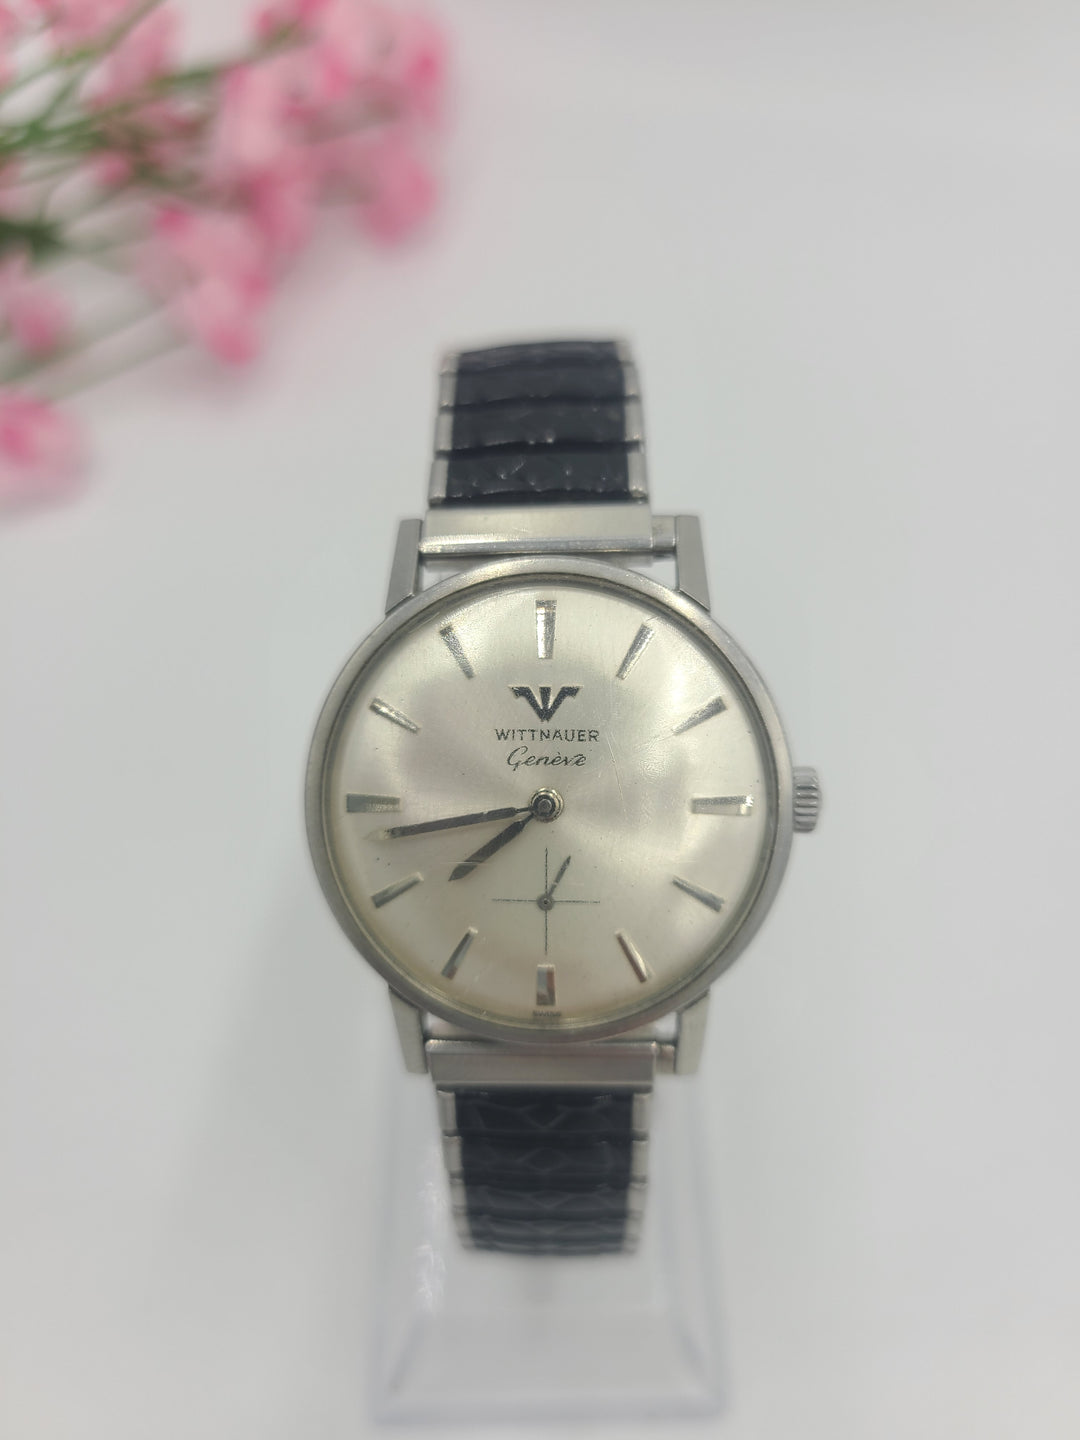 k737 Men's Vintage Mechanical Wittnauer Wristwatch